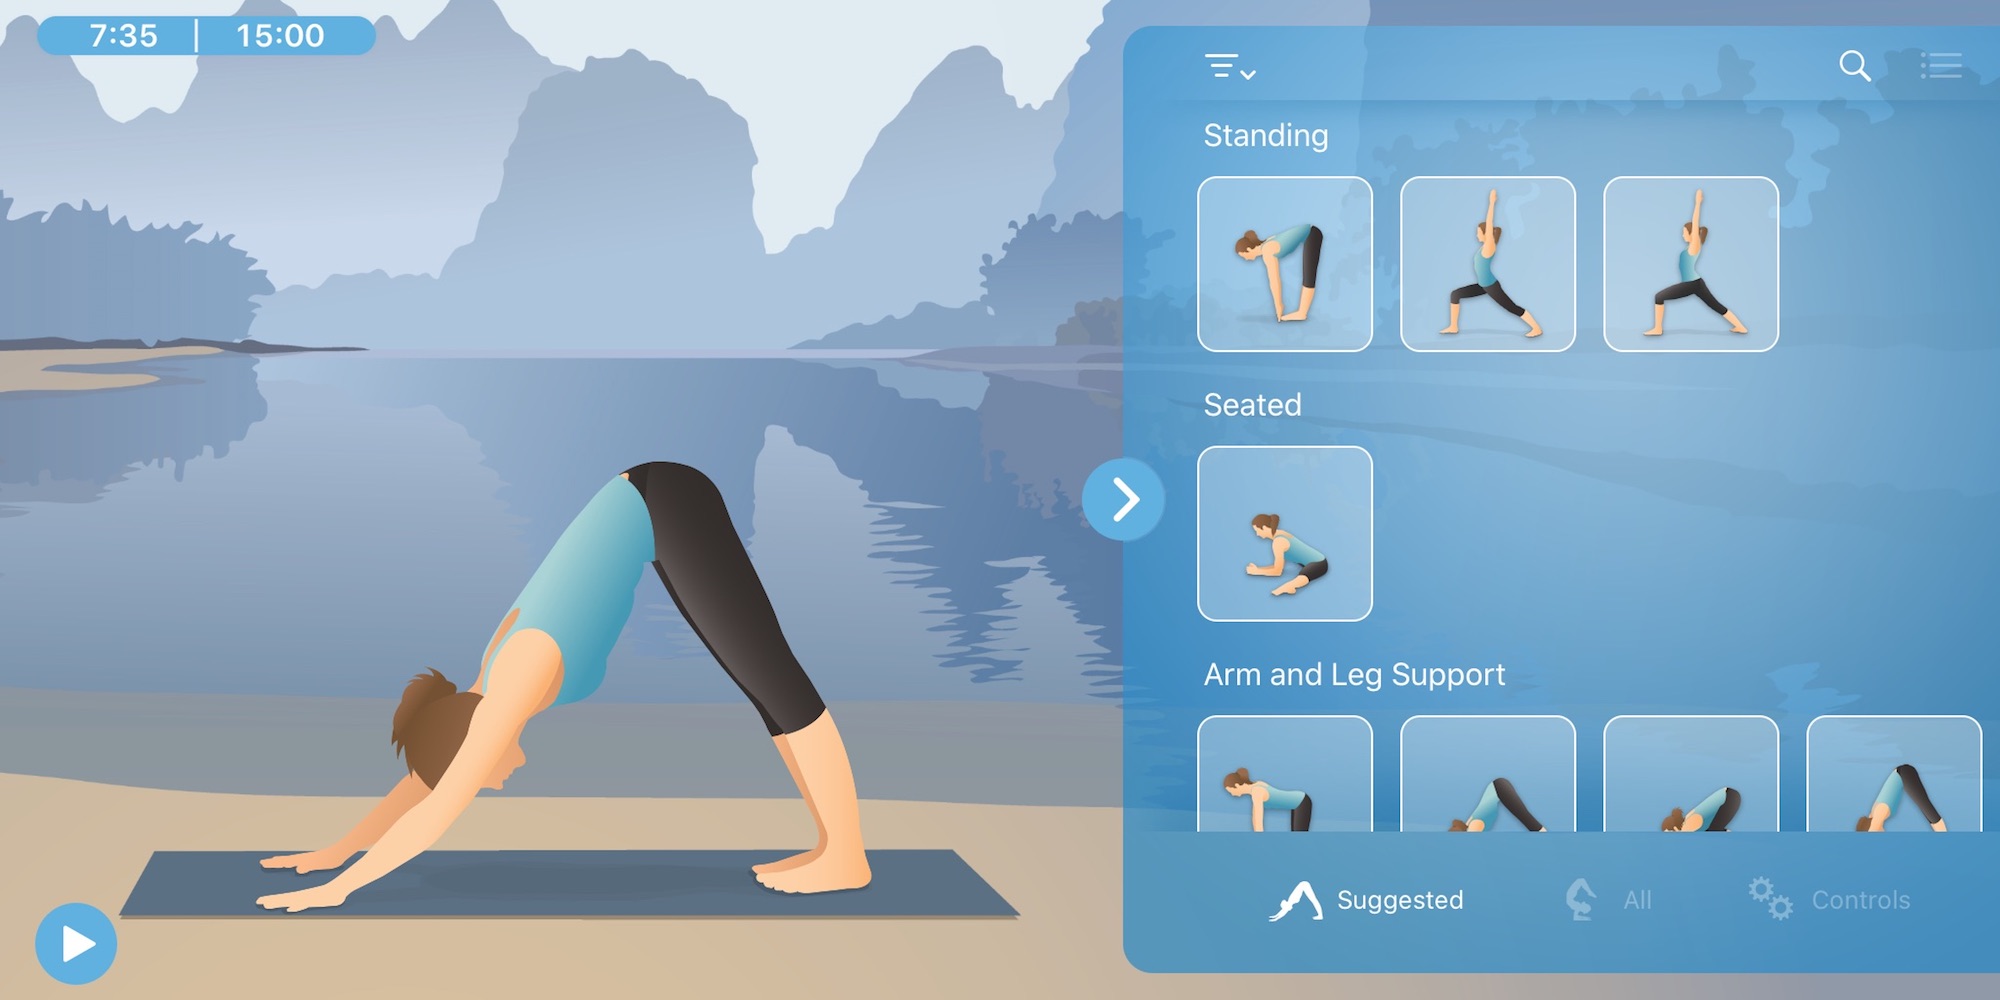 Pocket Yoga Teacher now FREE on iOS (Reg. $10) - 9to5Toys